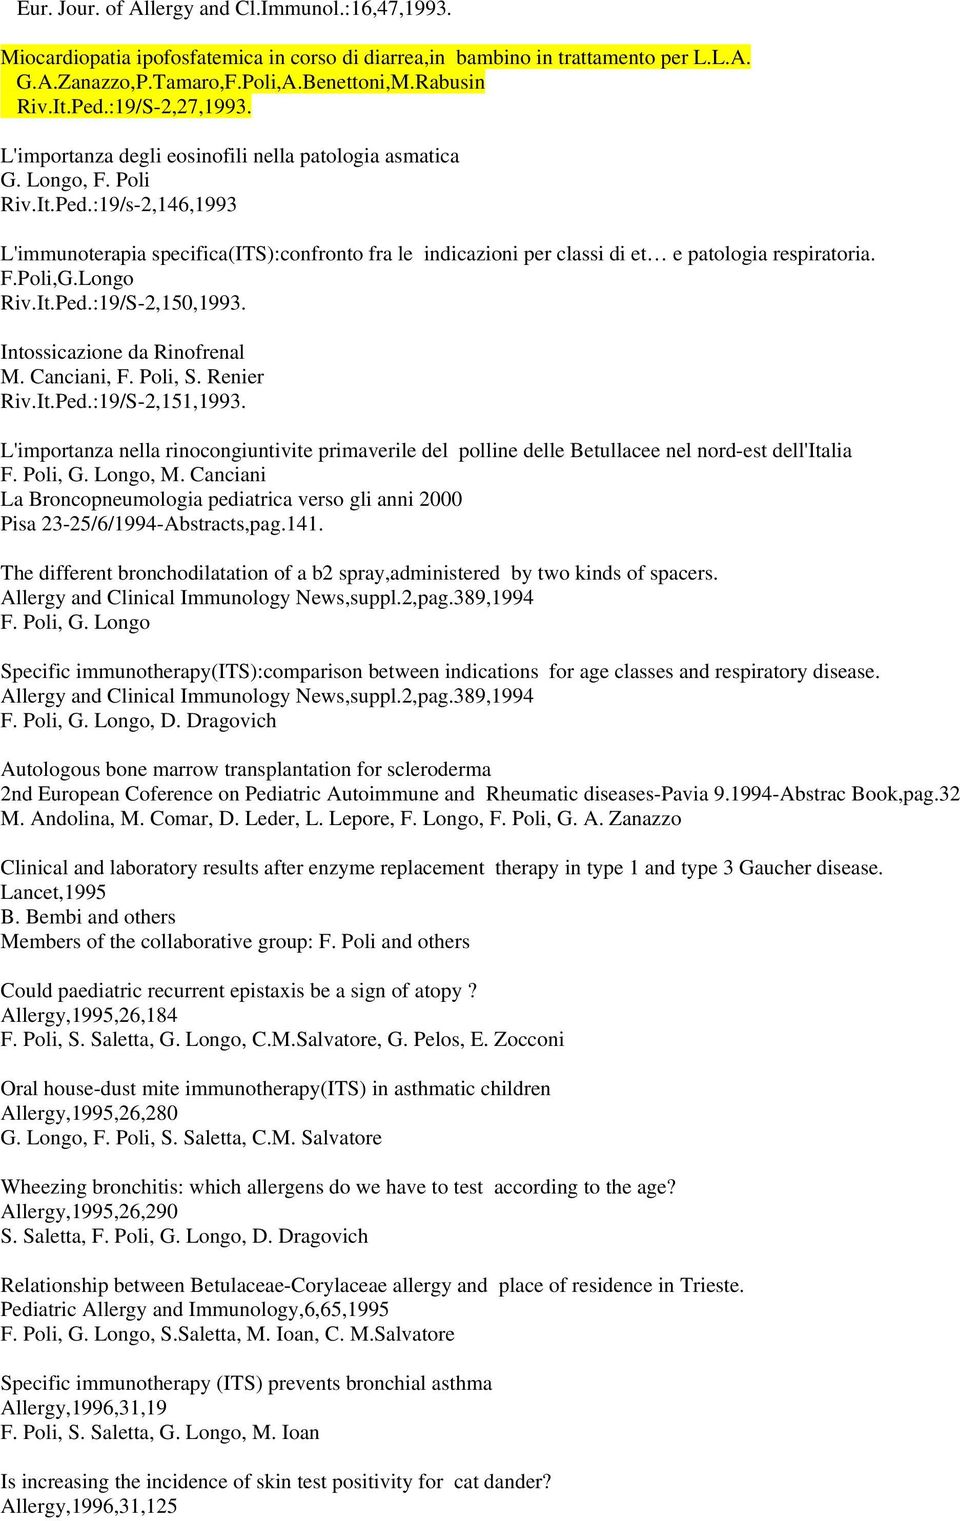 :19/s-2,146,1993 L'immunoterapia specifica(its):confronto fra le indicazioni per classi di et e patologia respiratoria. F.Poli,G.Longo Riv.It.Ped.:19/S-2,150,1993. Intossicazione da Rinofrenal M.